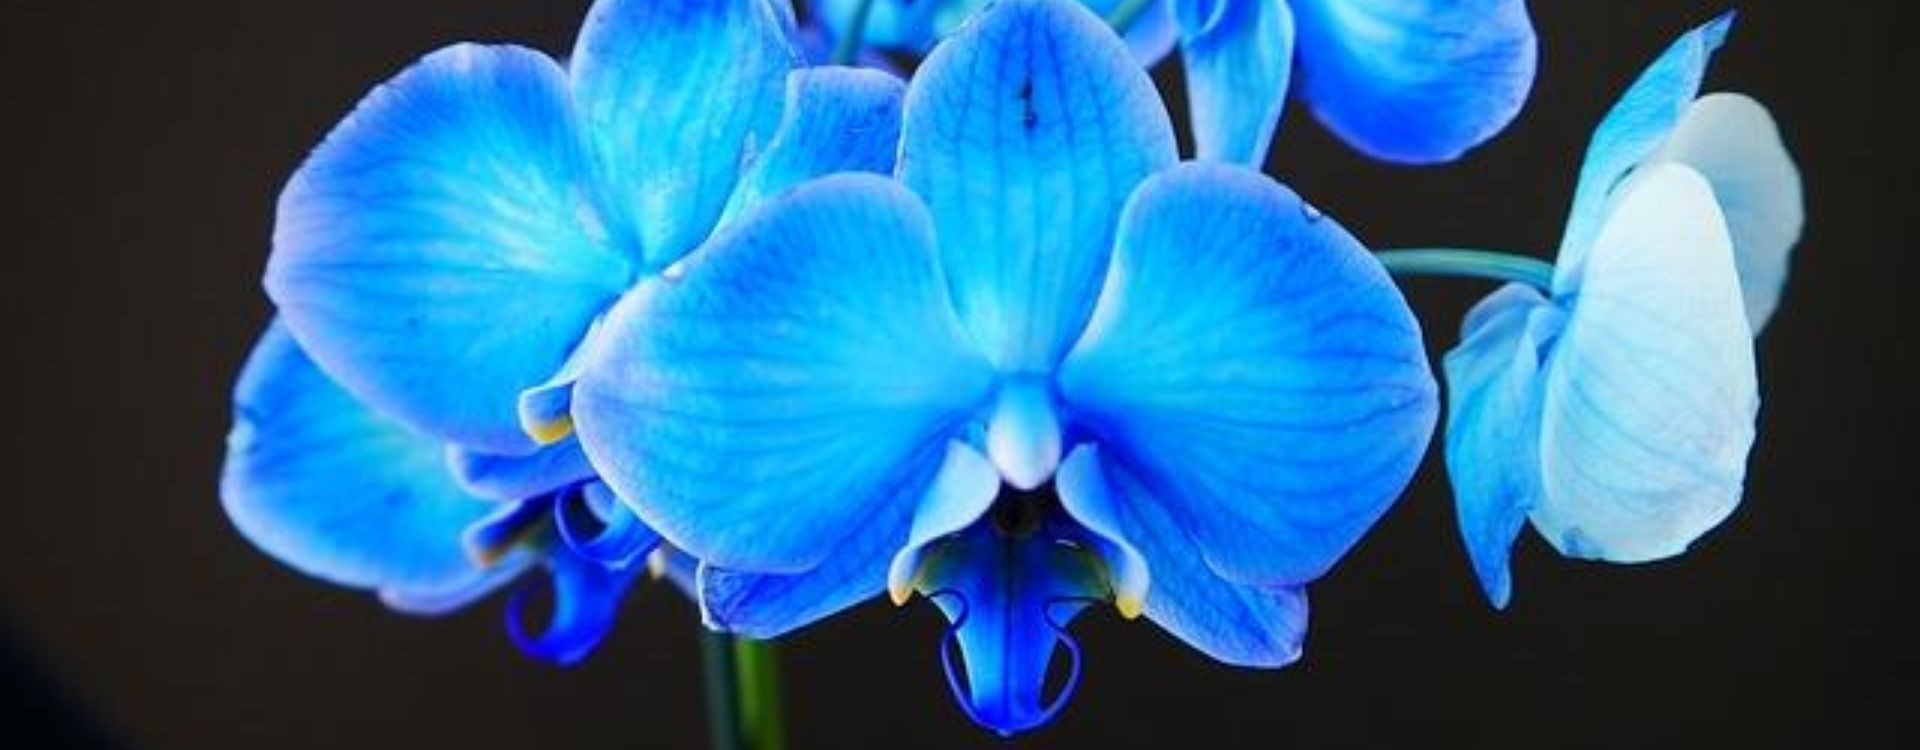 ➡ Flores azules: ¿Cómo son y dónde encontrarlas? - Guía completa